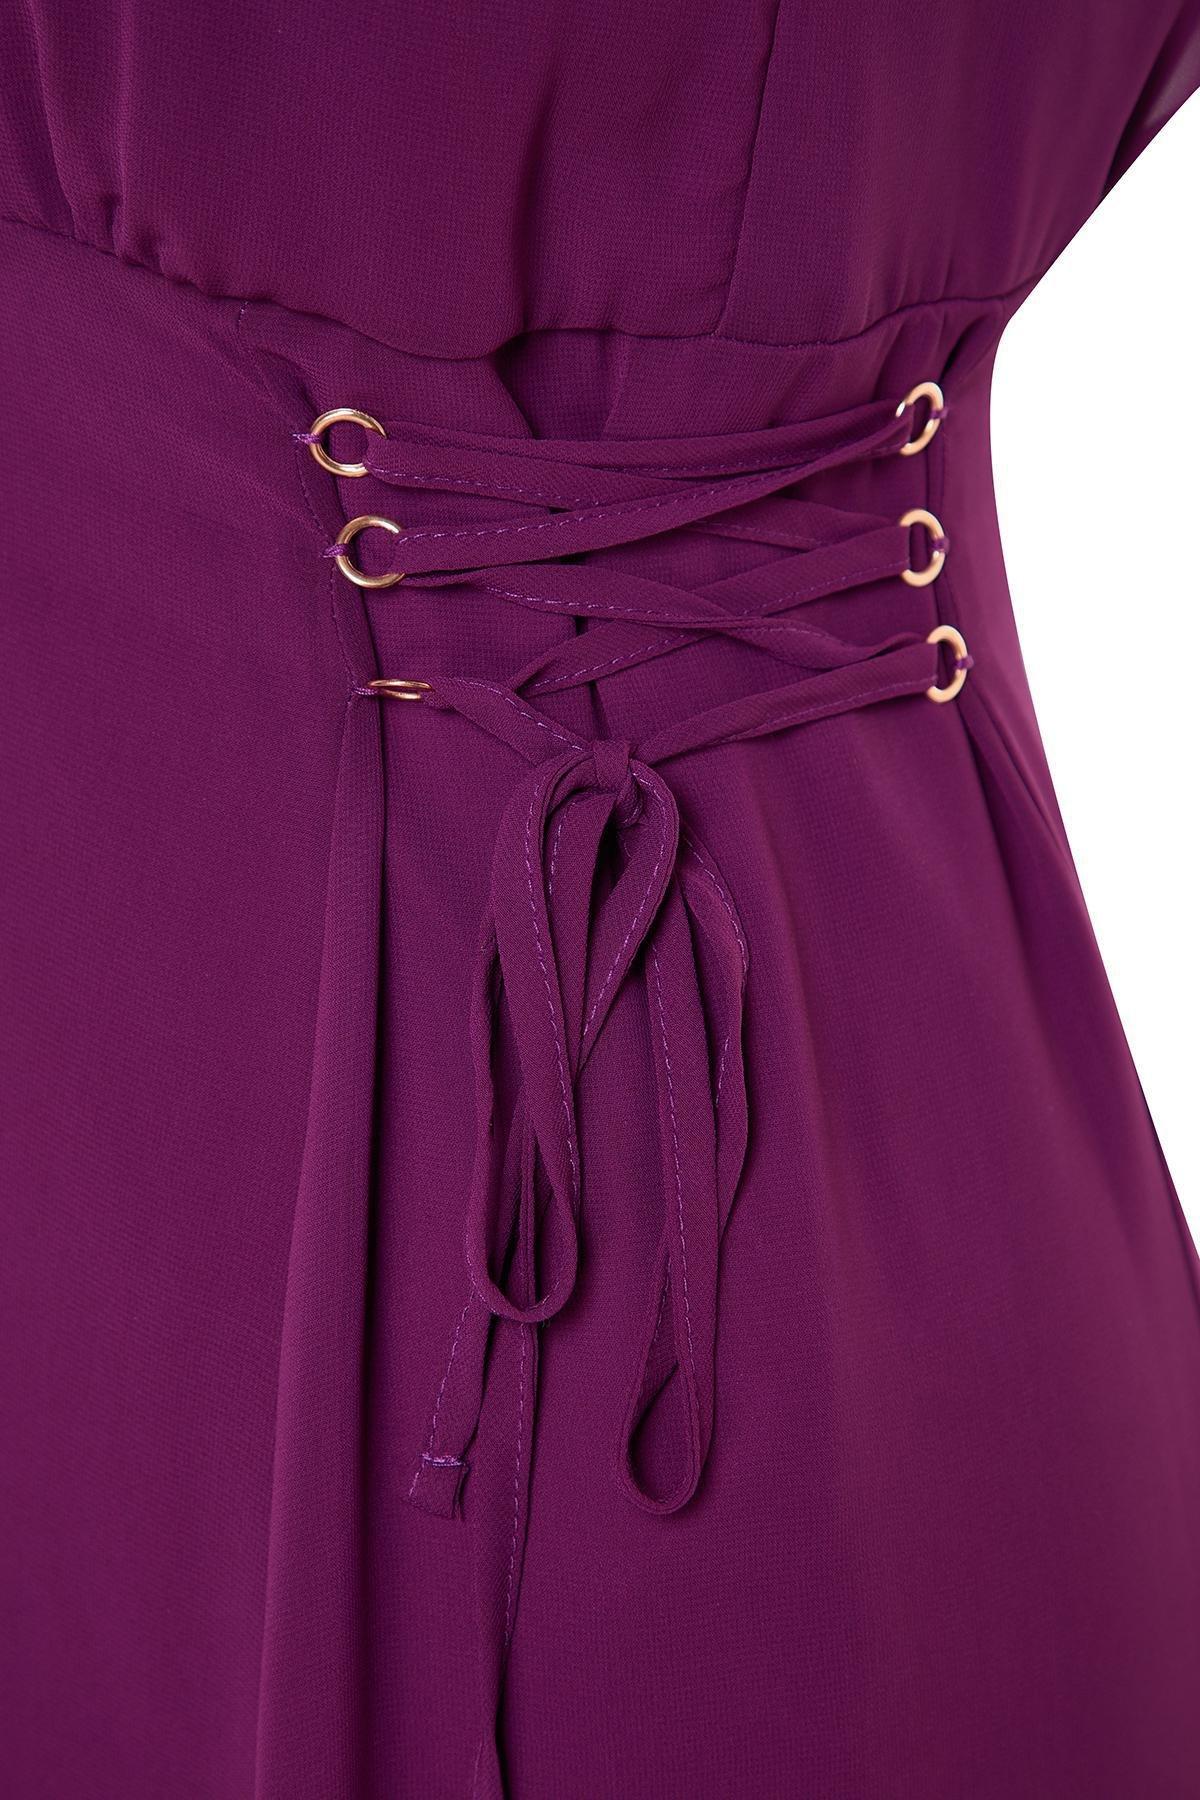 Trendyol - Purple Detailed Lined Dress